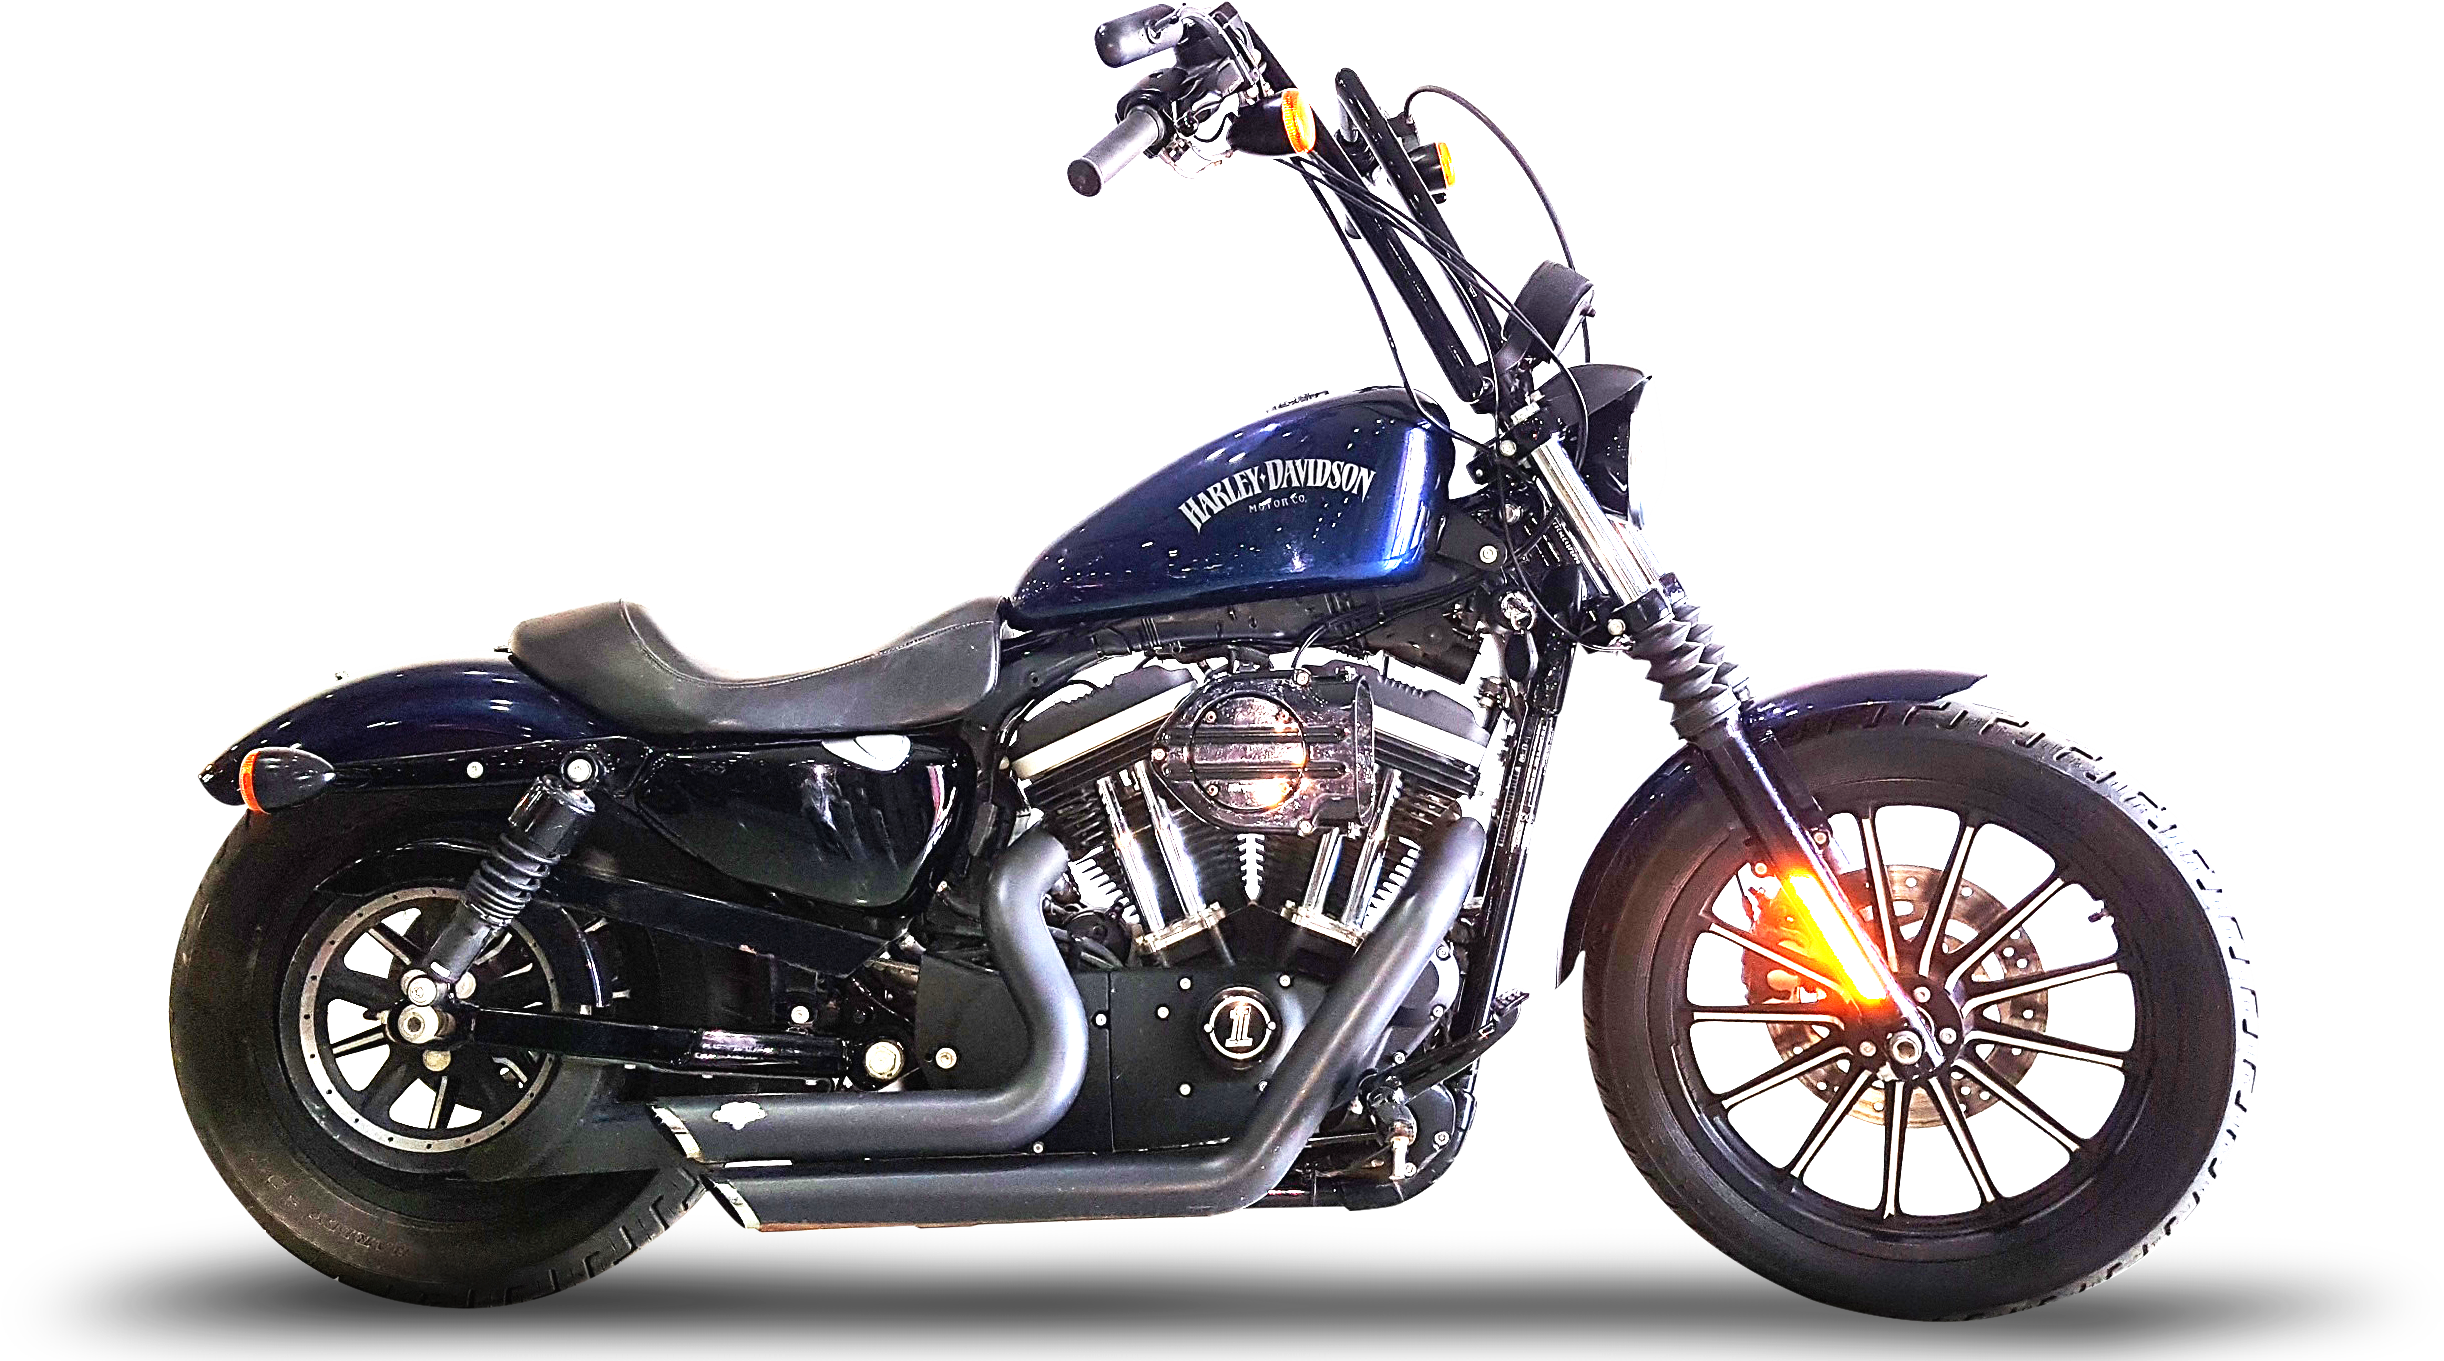 Harley Davidson Sportster 883 Images